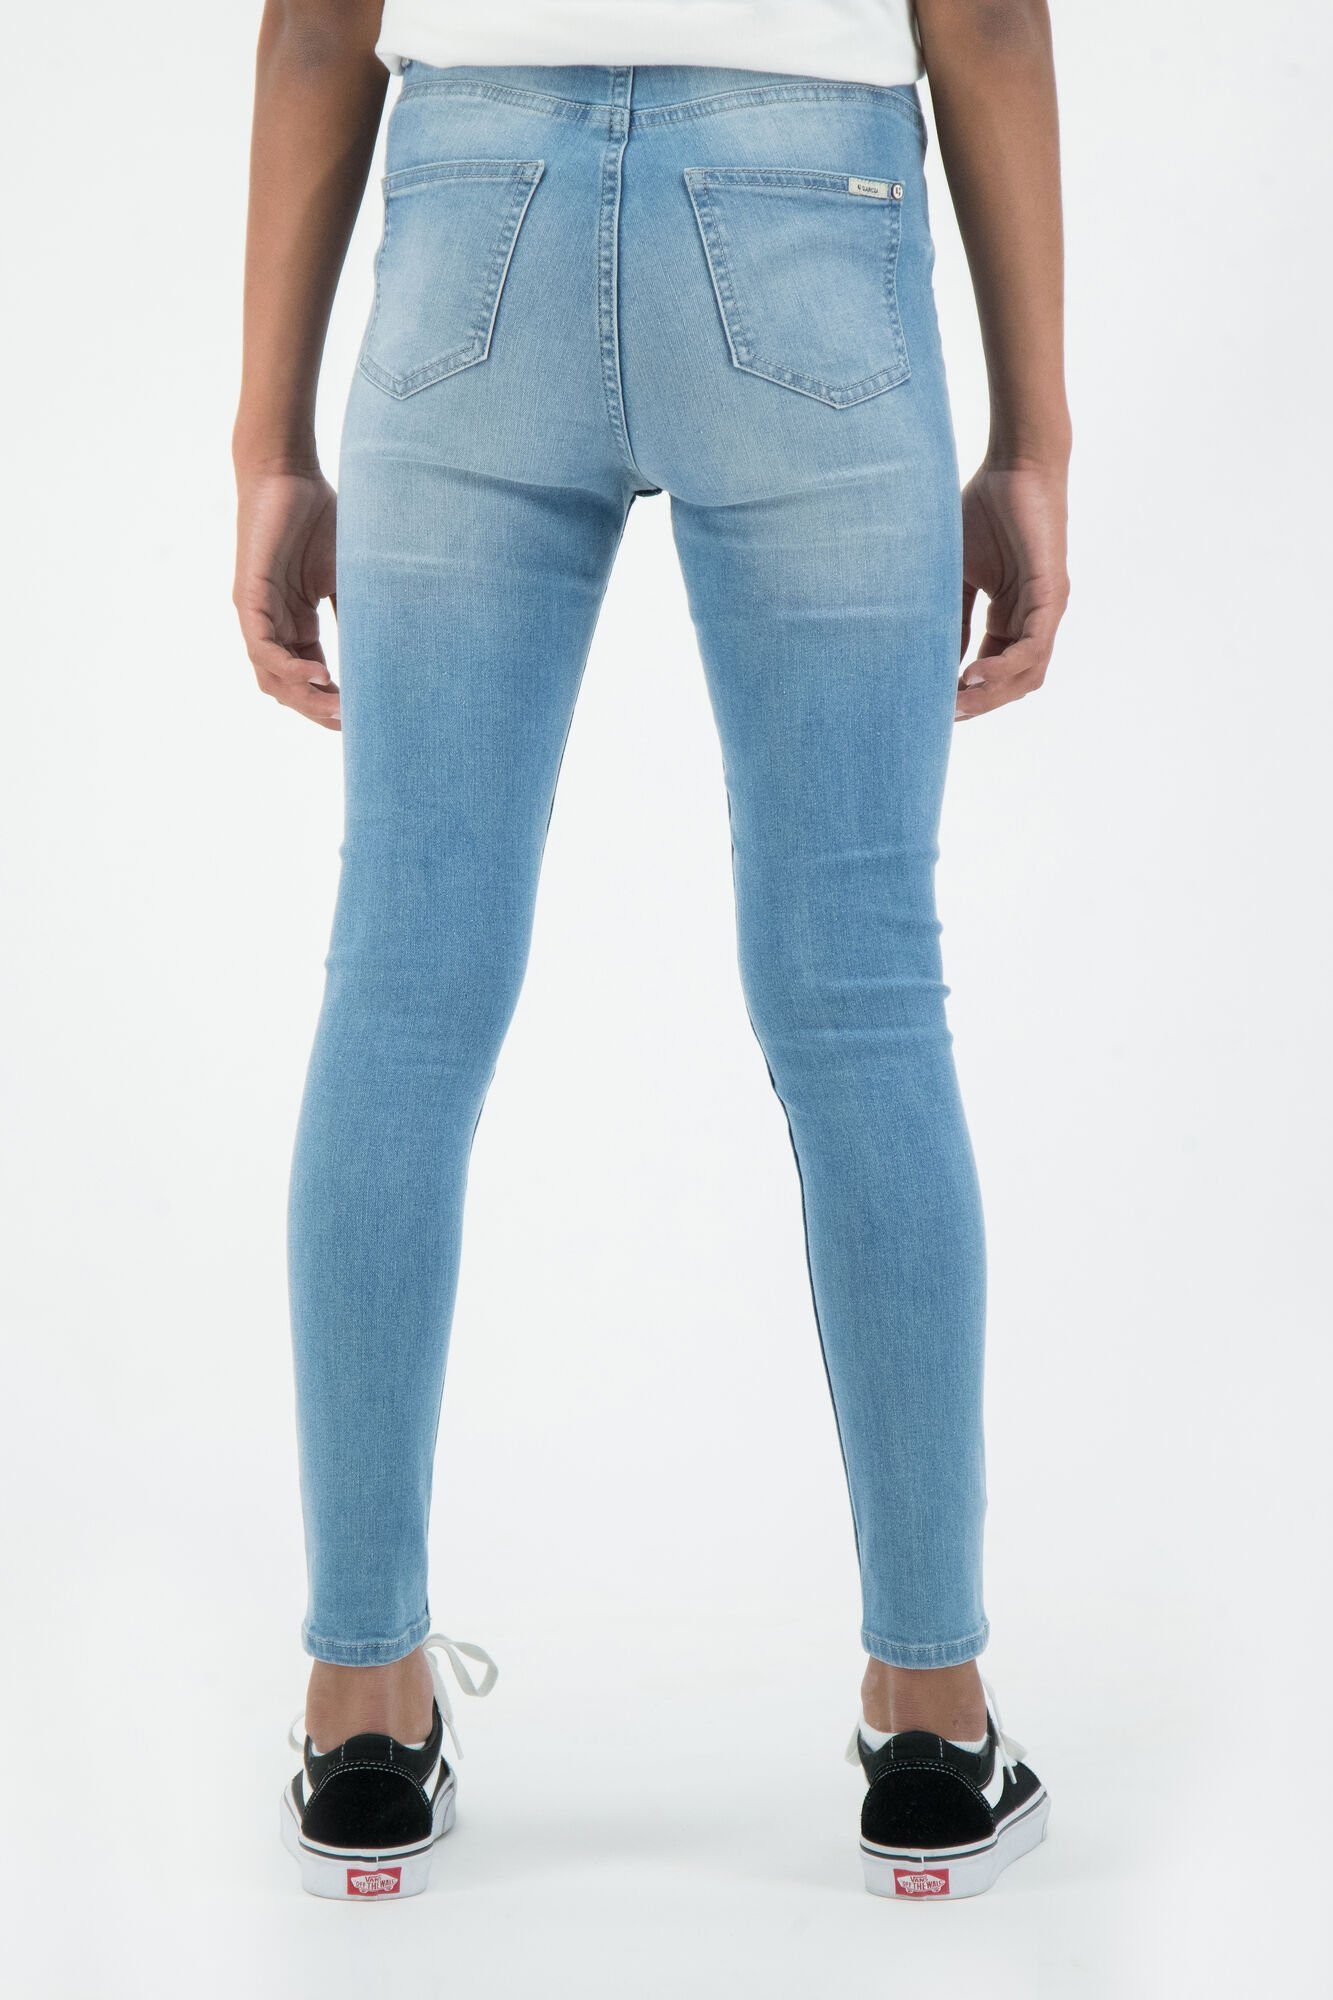 Garcia Slim-fit-Jeans Cropped Sienna superslim Jeans